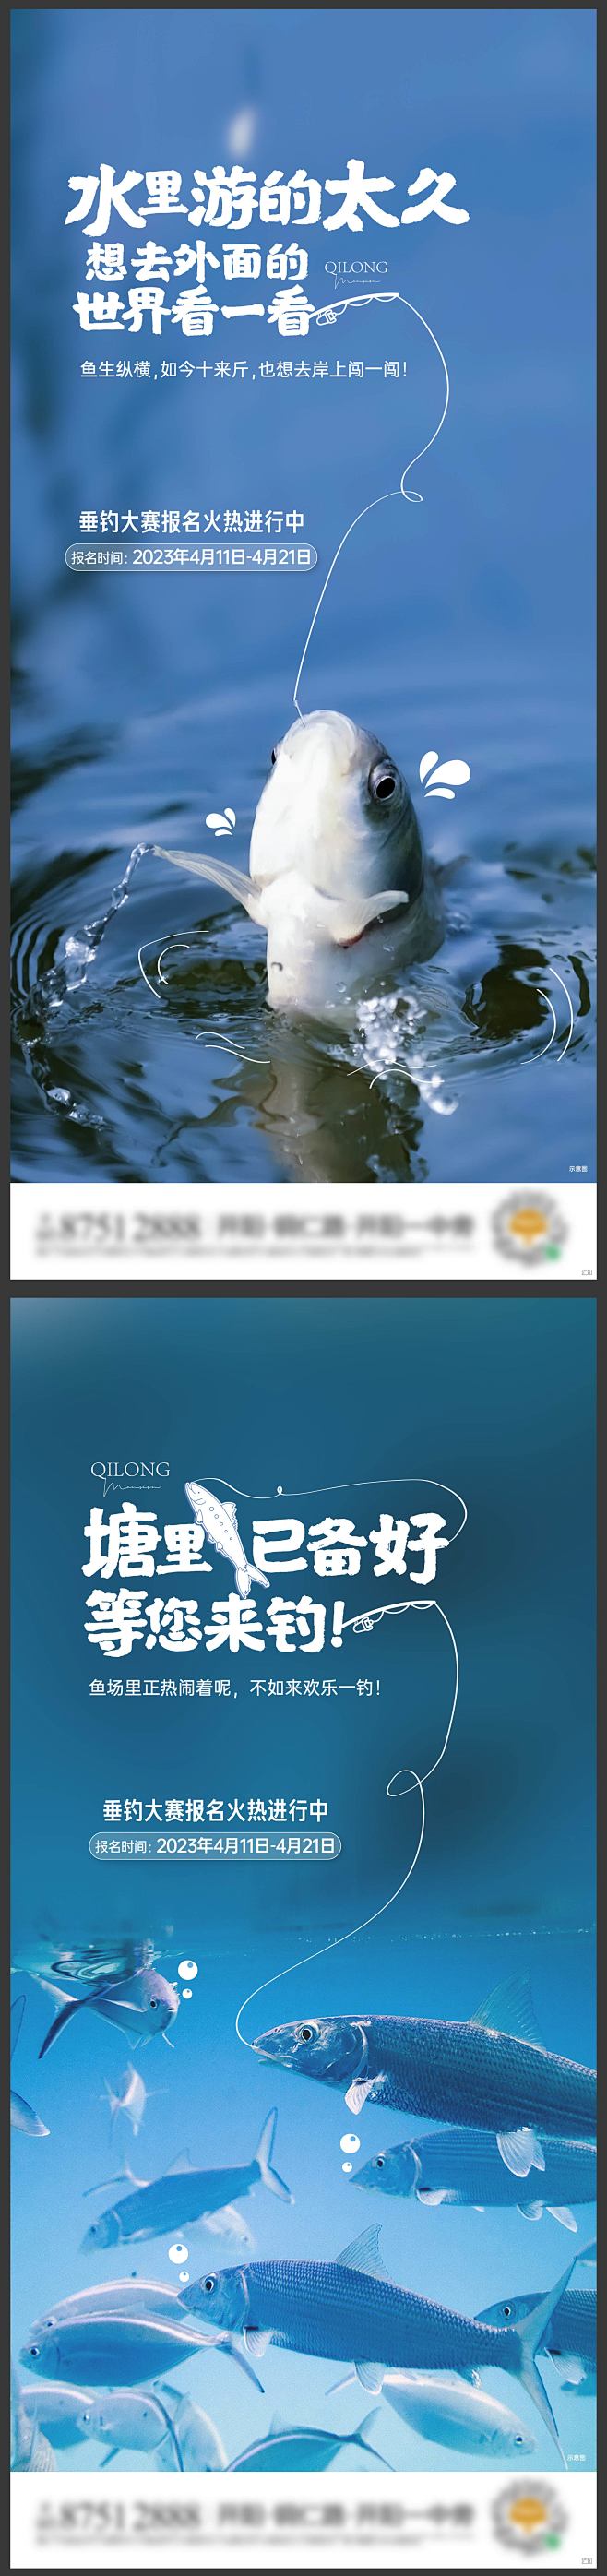 钓鱼活动系列海报-志设网-zs9.com